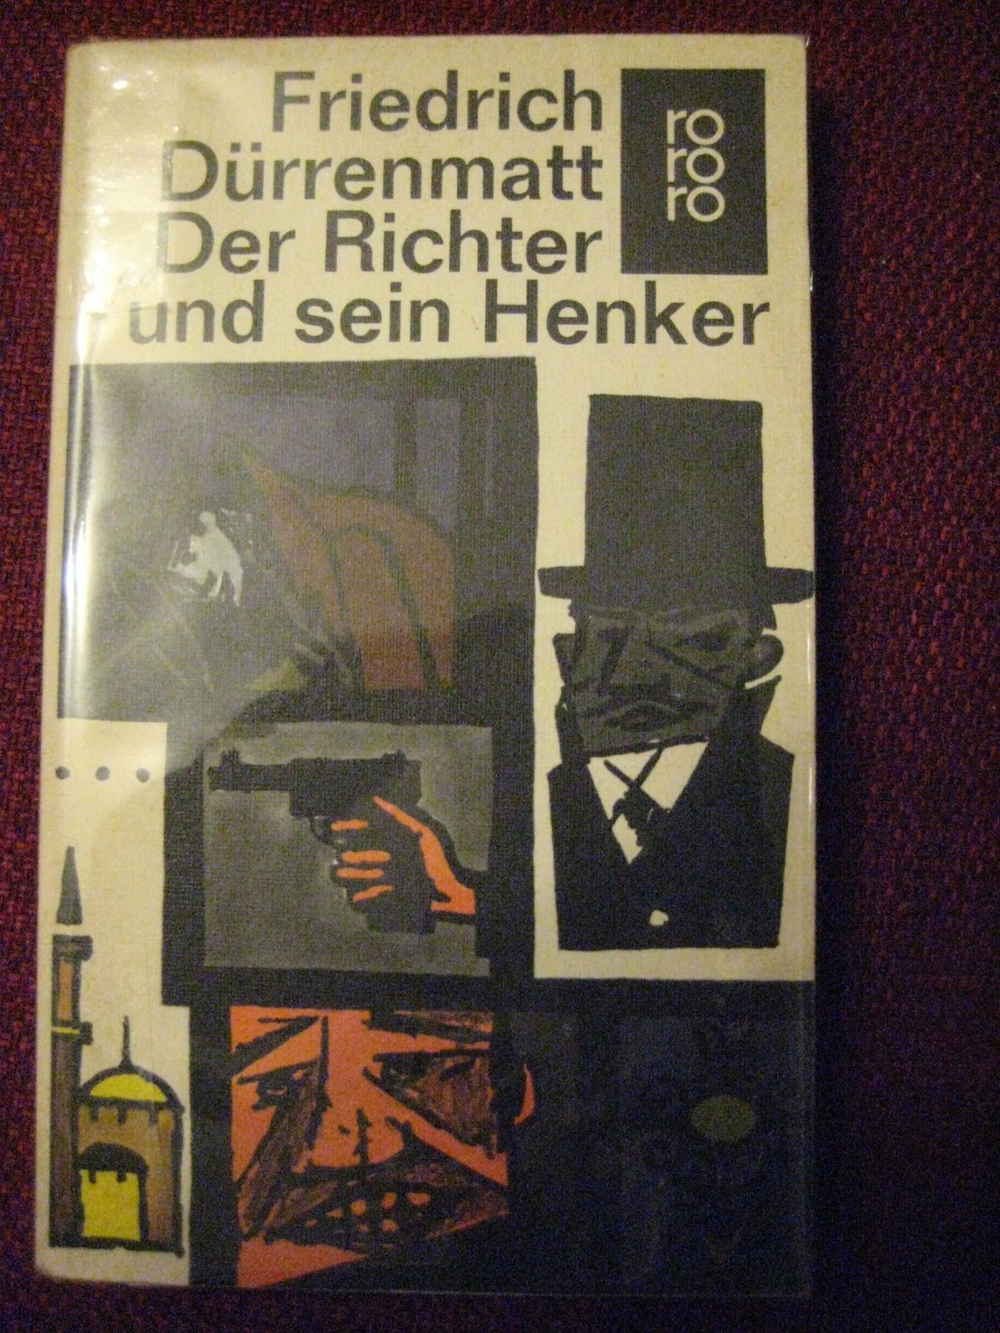 Spannender Kriminalroman Der Richter und sein Henker von Friedrich Dürrenmatt, Diogenes Verlag